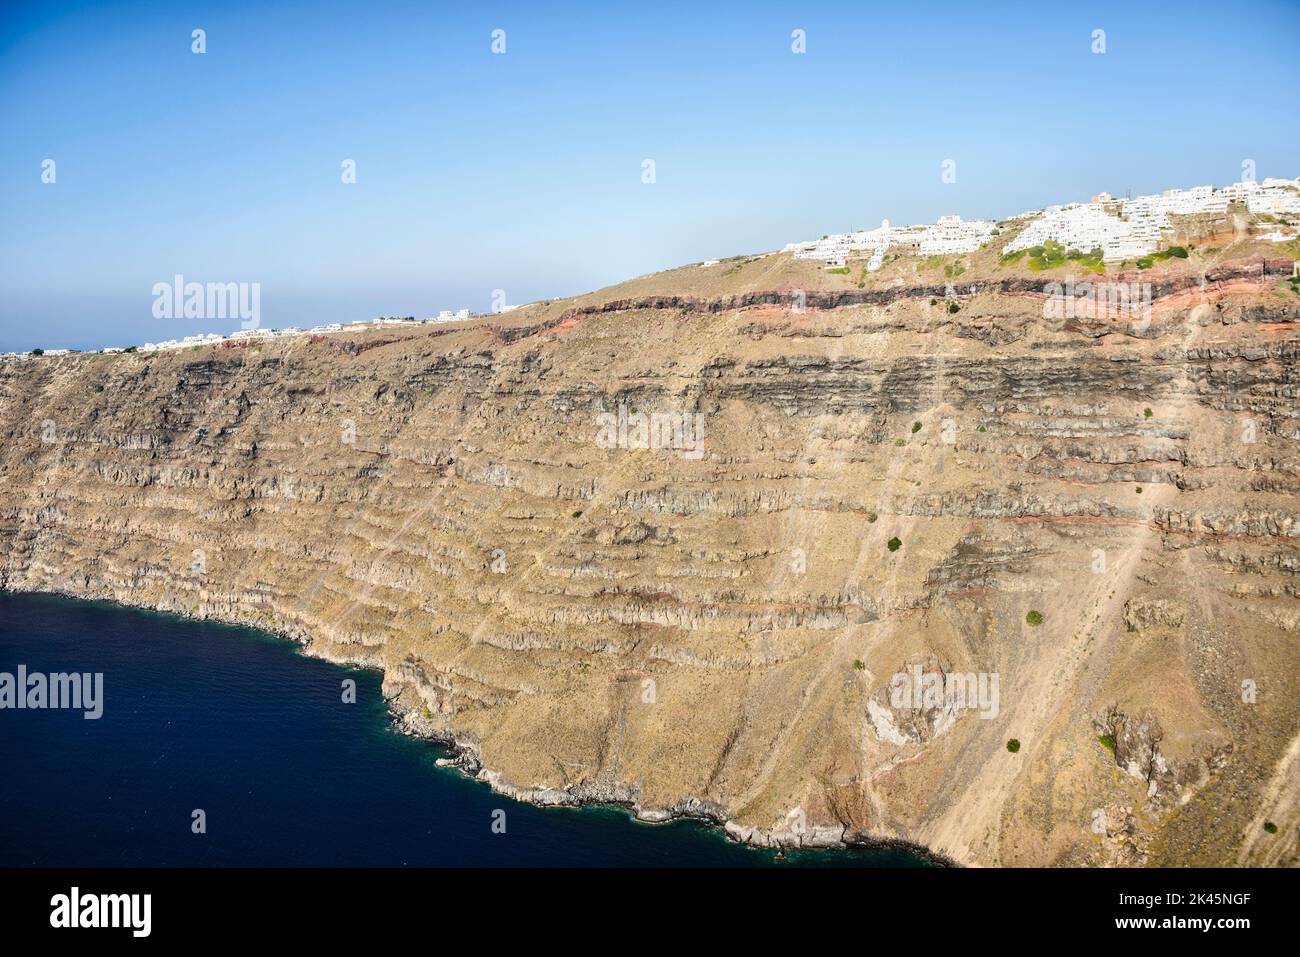 Vue aérienne d'une ville au sommet d'une falaise sur l'île d'Egeo, maisons blanchies à la chaux sur le sommet de la falaise. Banque D'Images